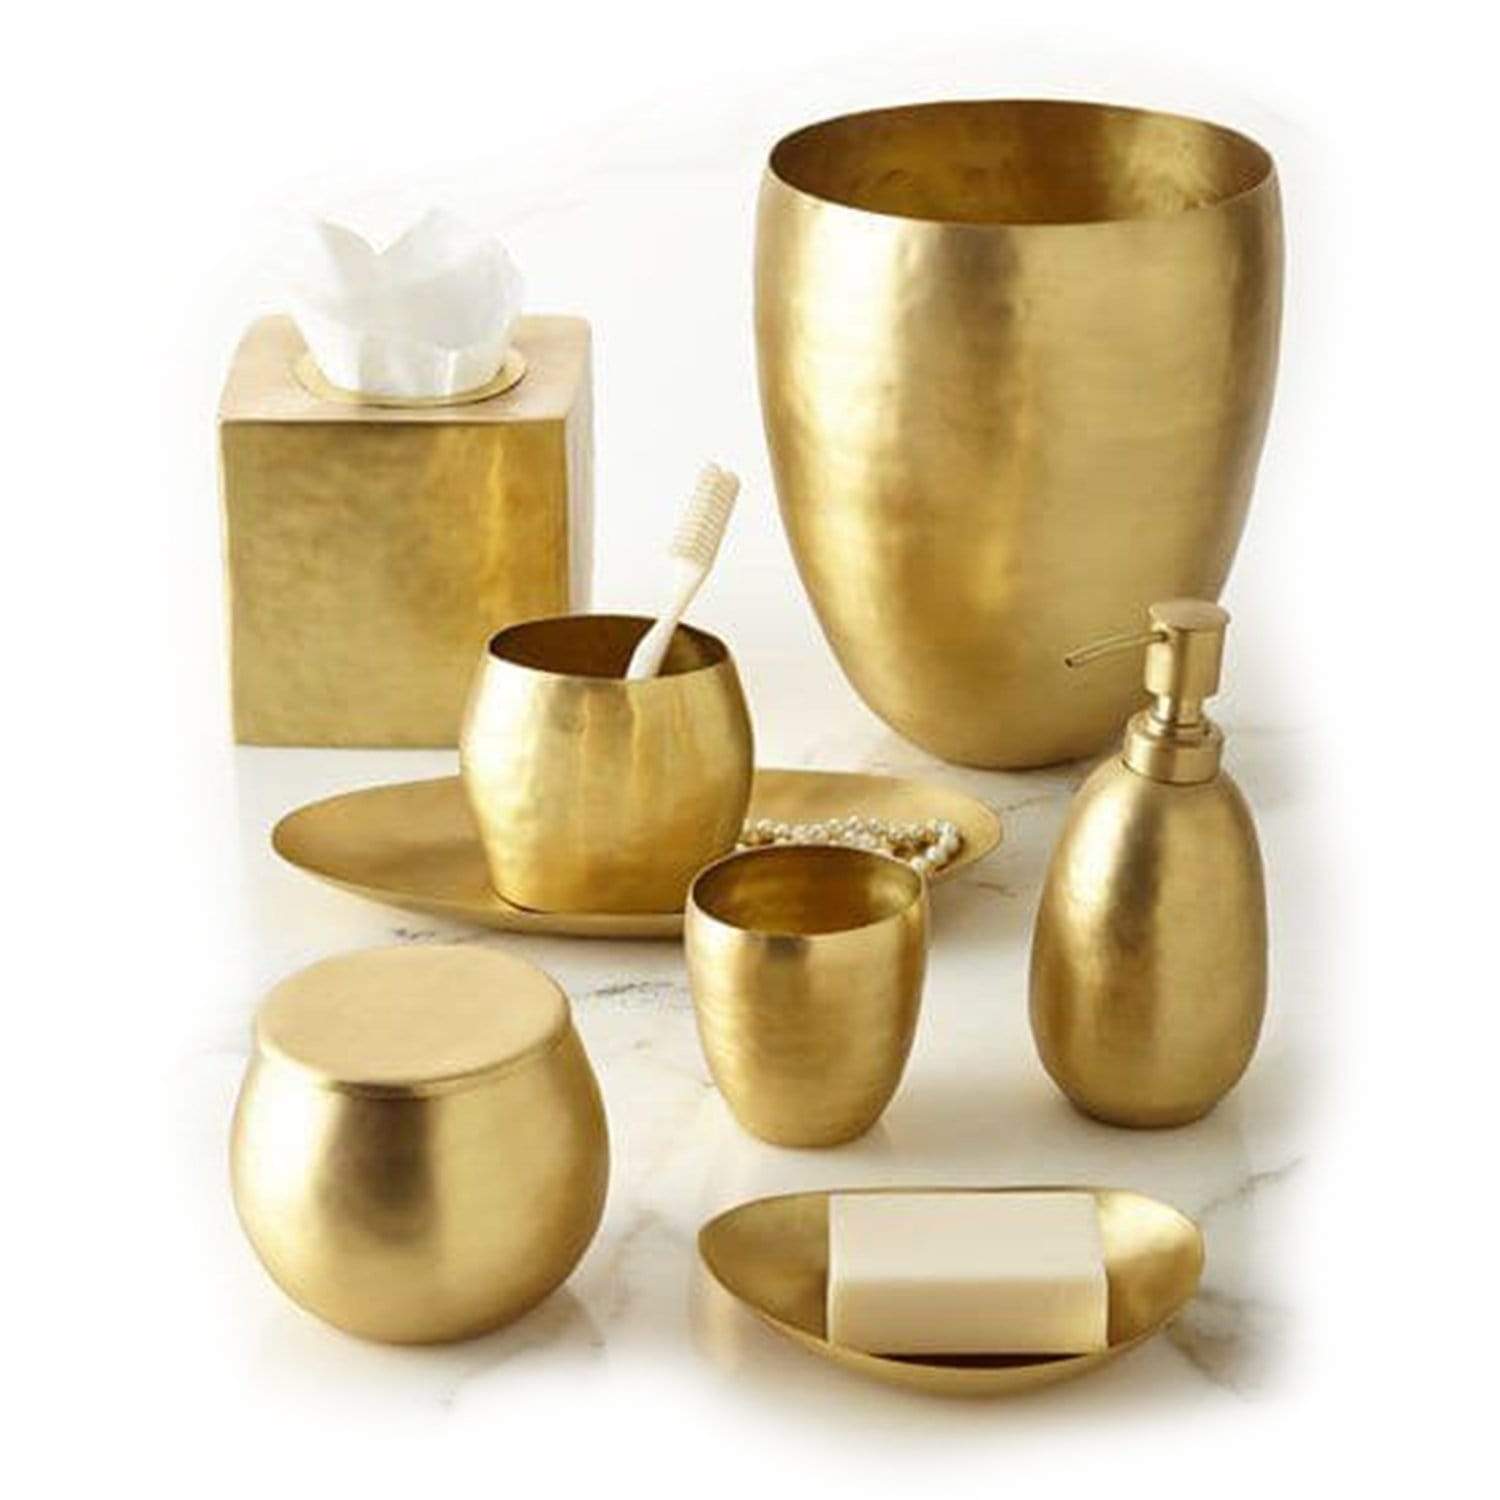 Kassatex Nile Brass Tumbler - Gold - ANL-T - Jashanmal Home